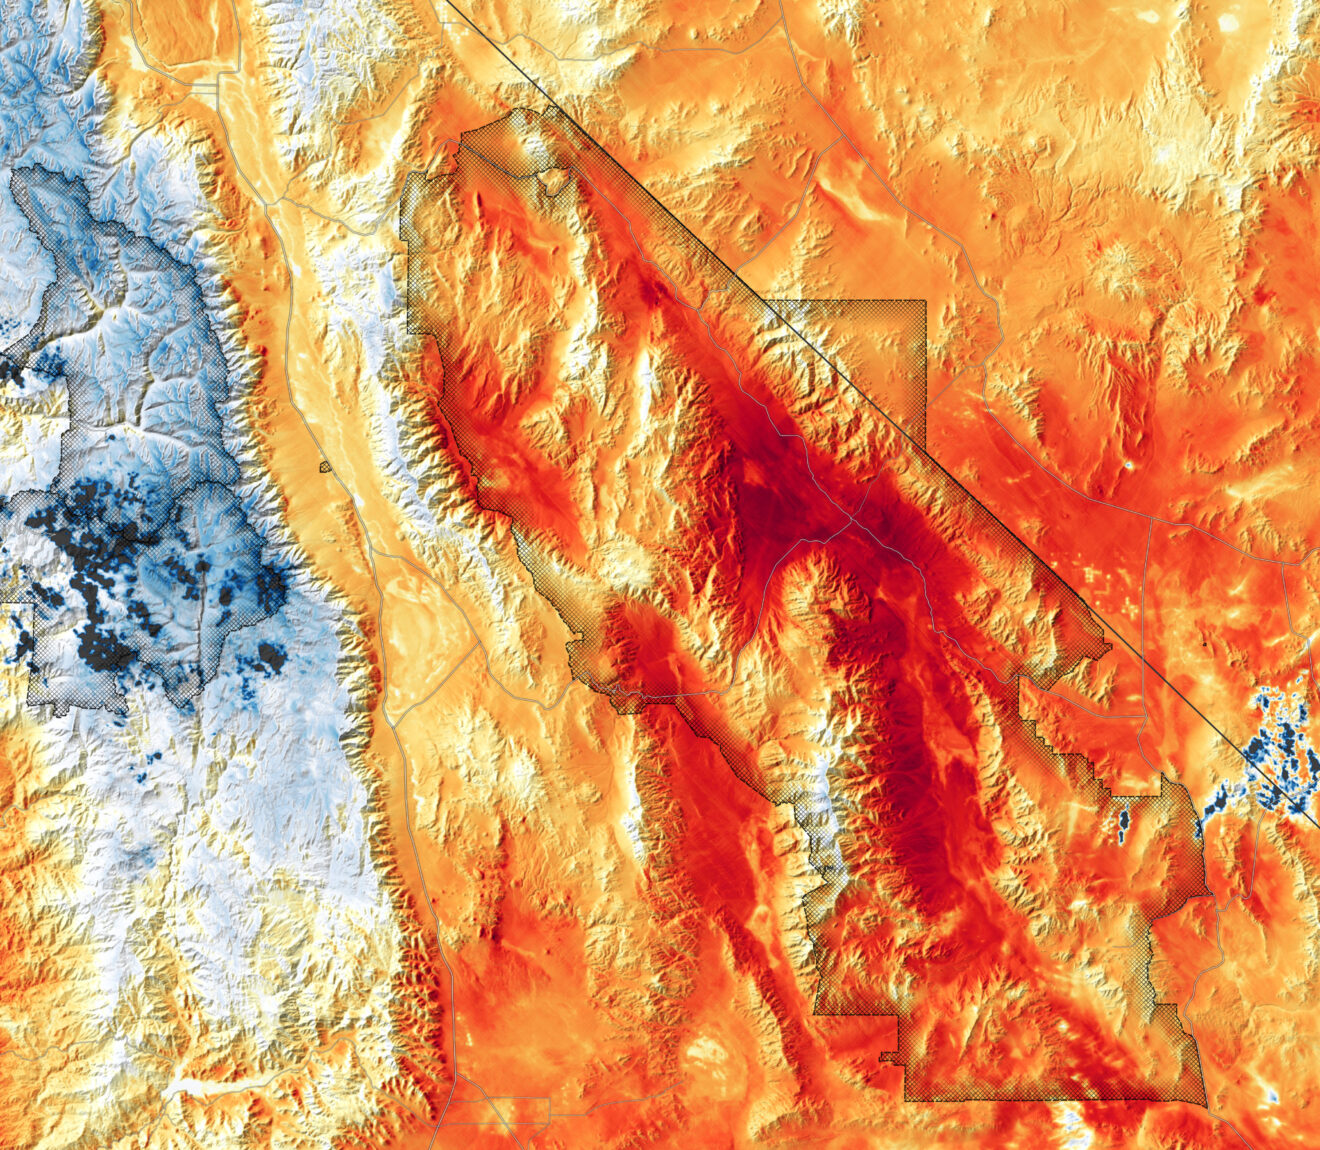 De extreme hitte in Death Valley vanuit de ruimte in beeld gebracht